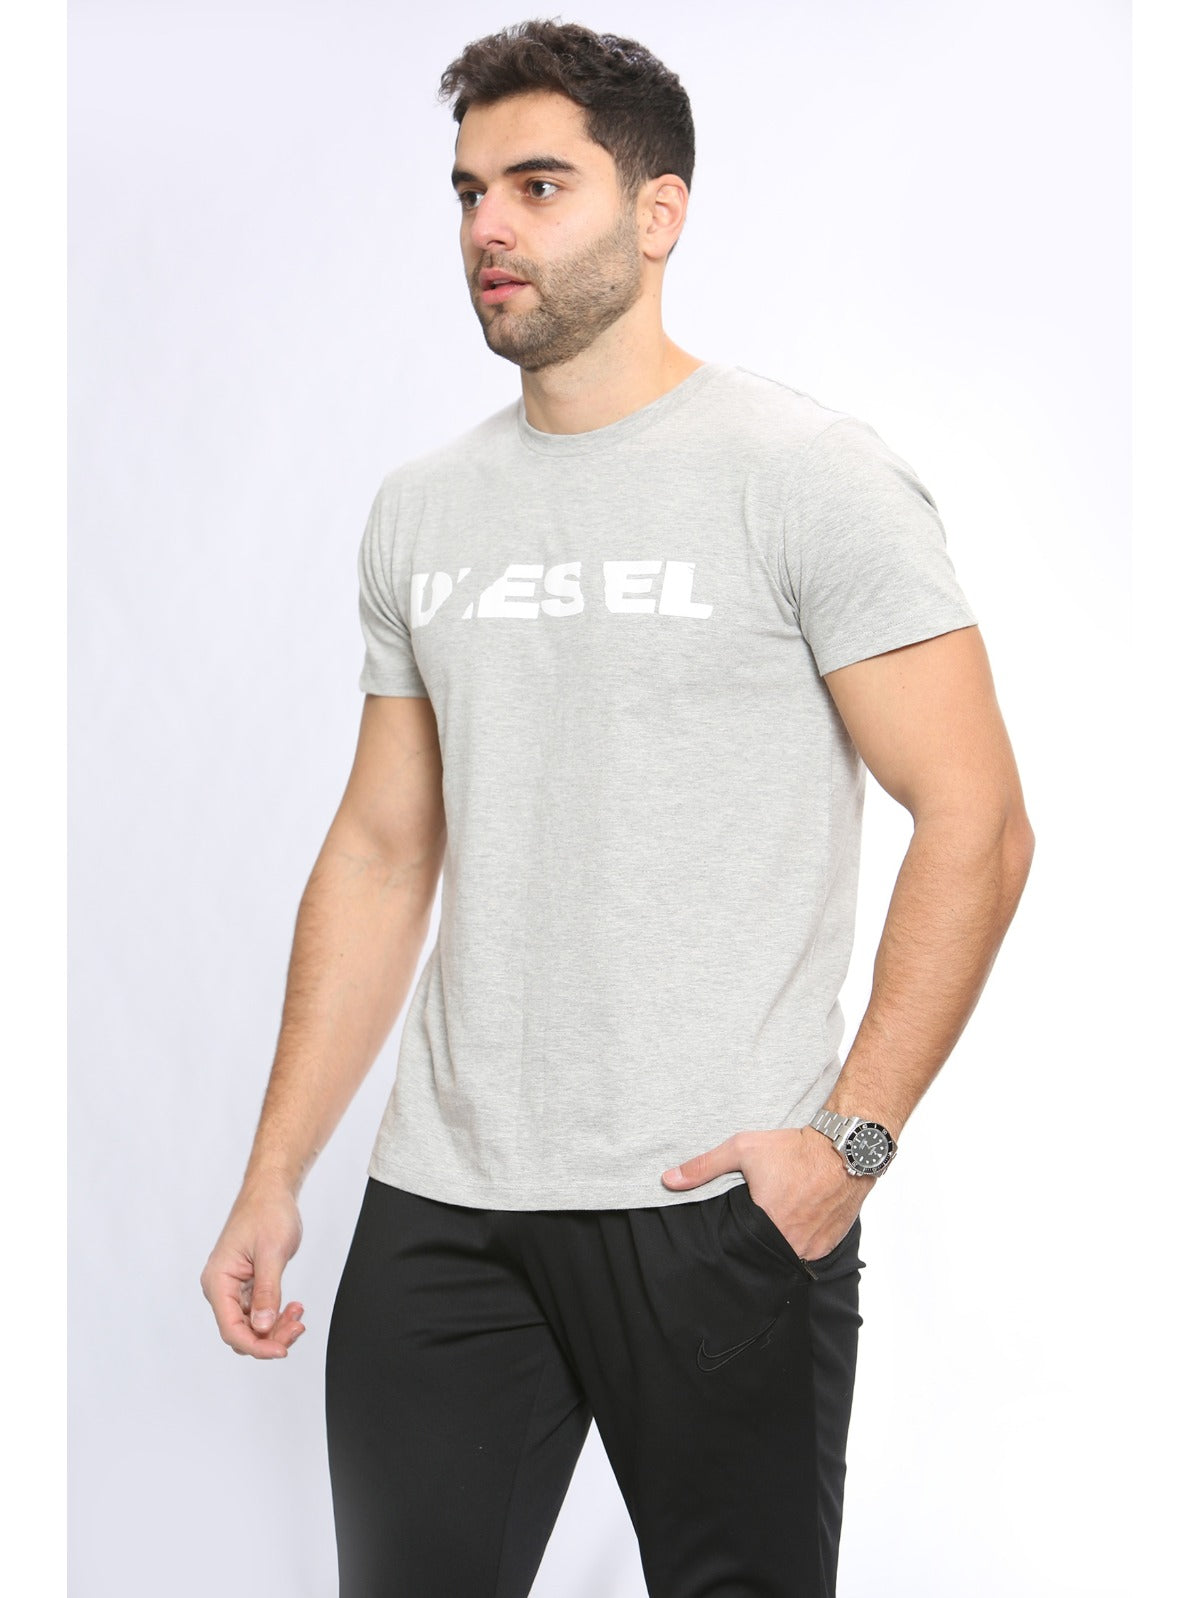 DIESEL T-DIEGO Diesel Mens Short Sleeve Casual T Shirt | T-Diego DIESEL RAWDENIM